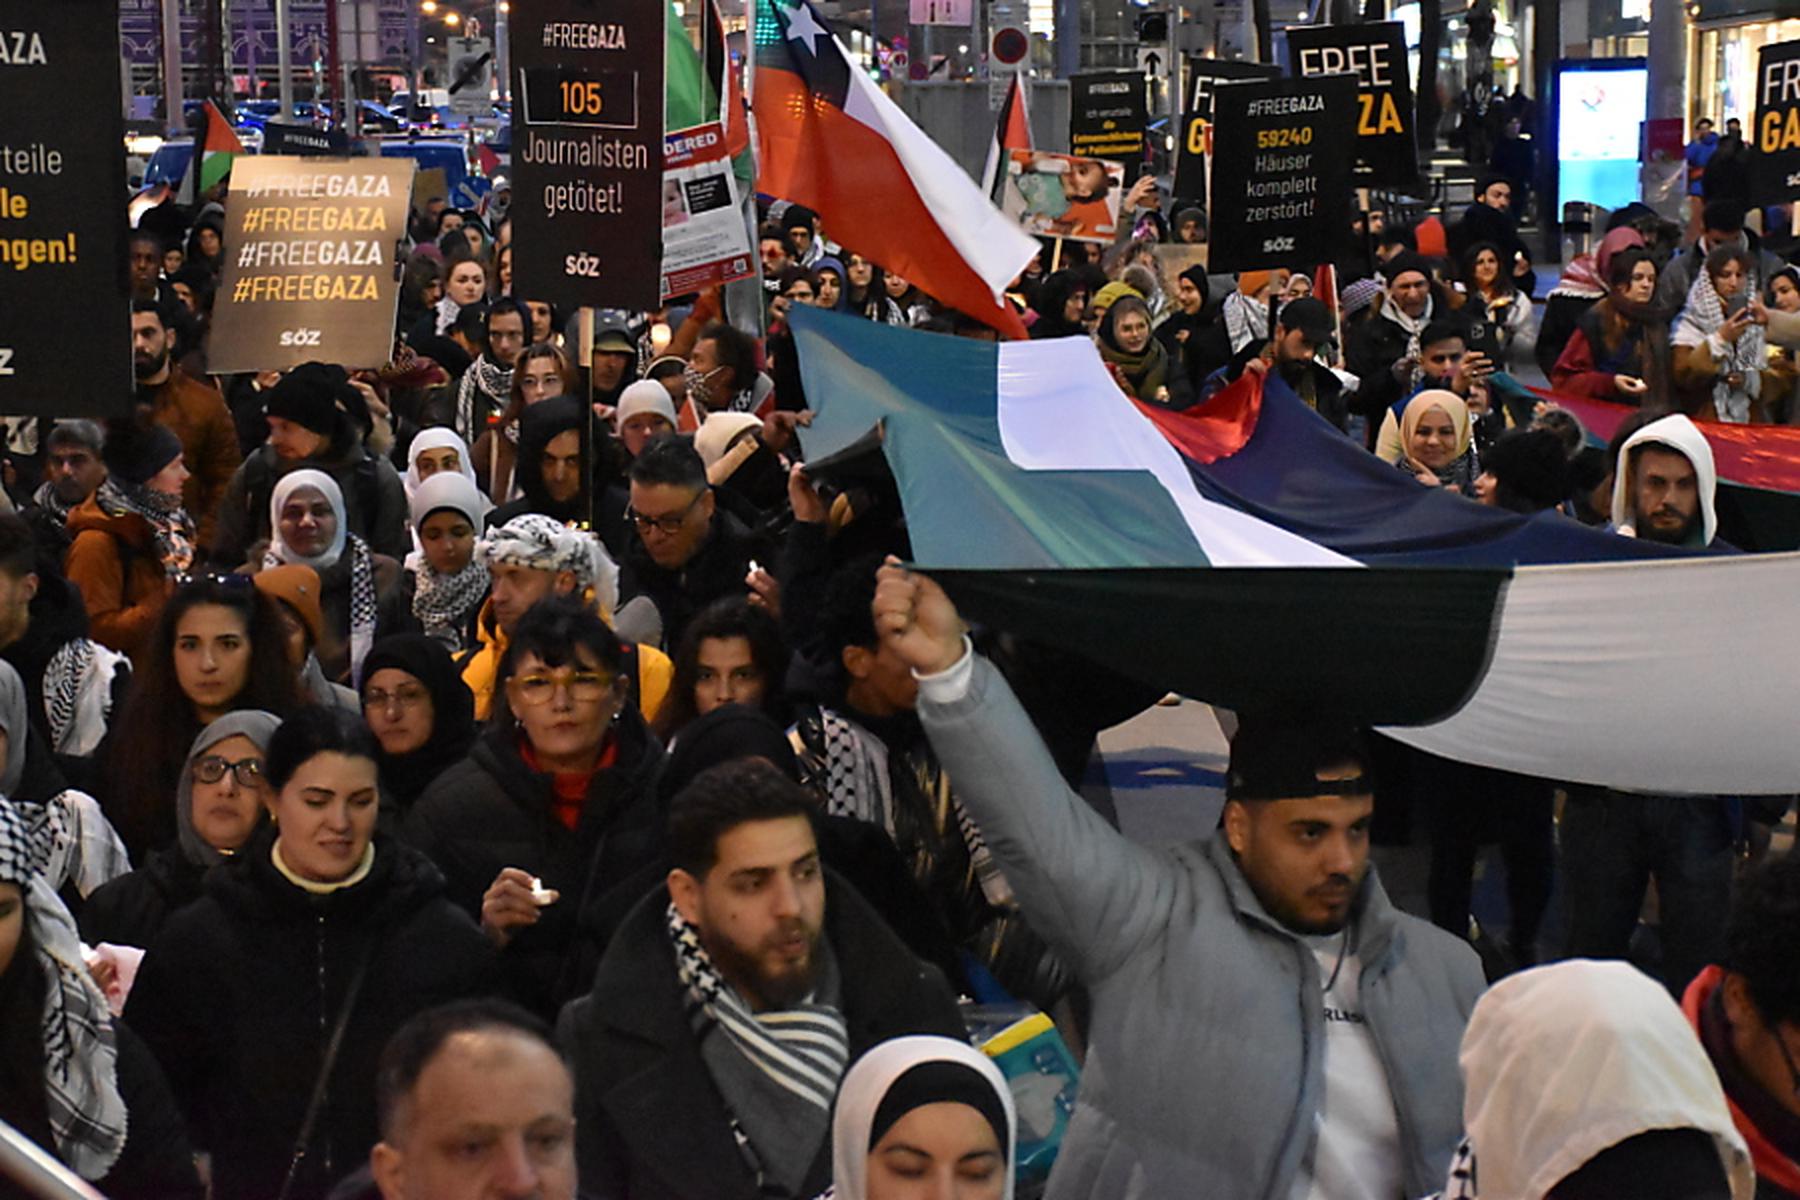 Wien: 500 bei Trauermarsch in Wien für die Toten im Gazastreifen